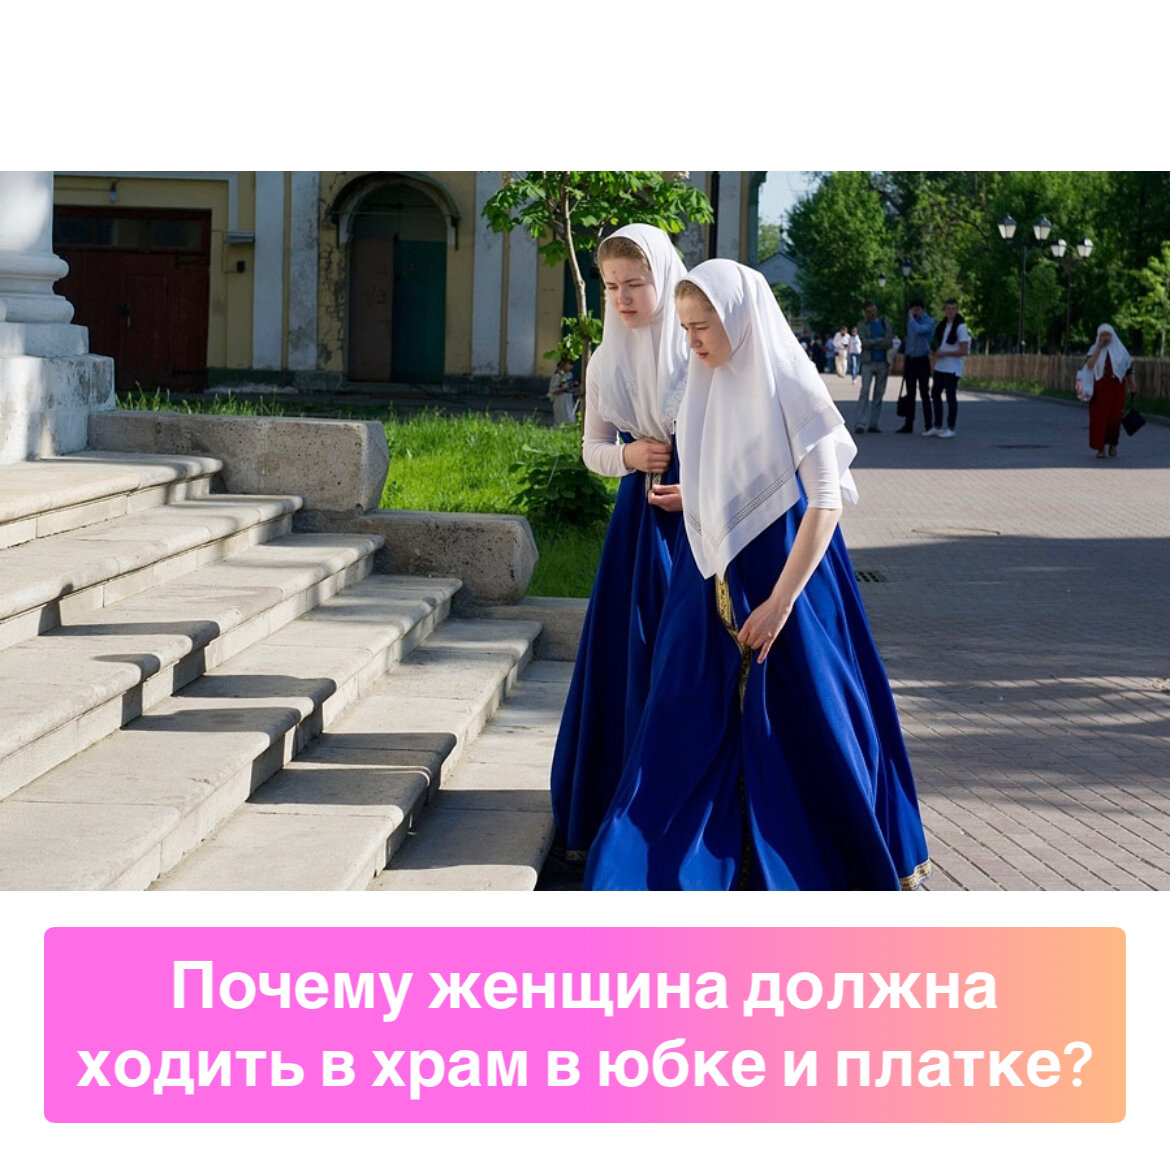 Нужно ли надевать платок. Православная женщина. Одежда в храм. Платье женское для церкви. Православный наряд.